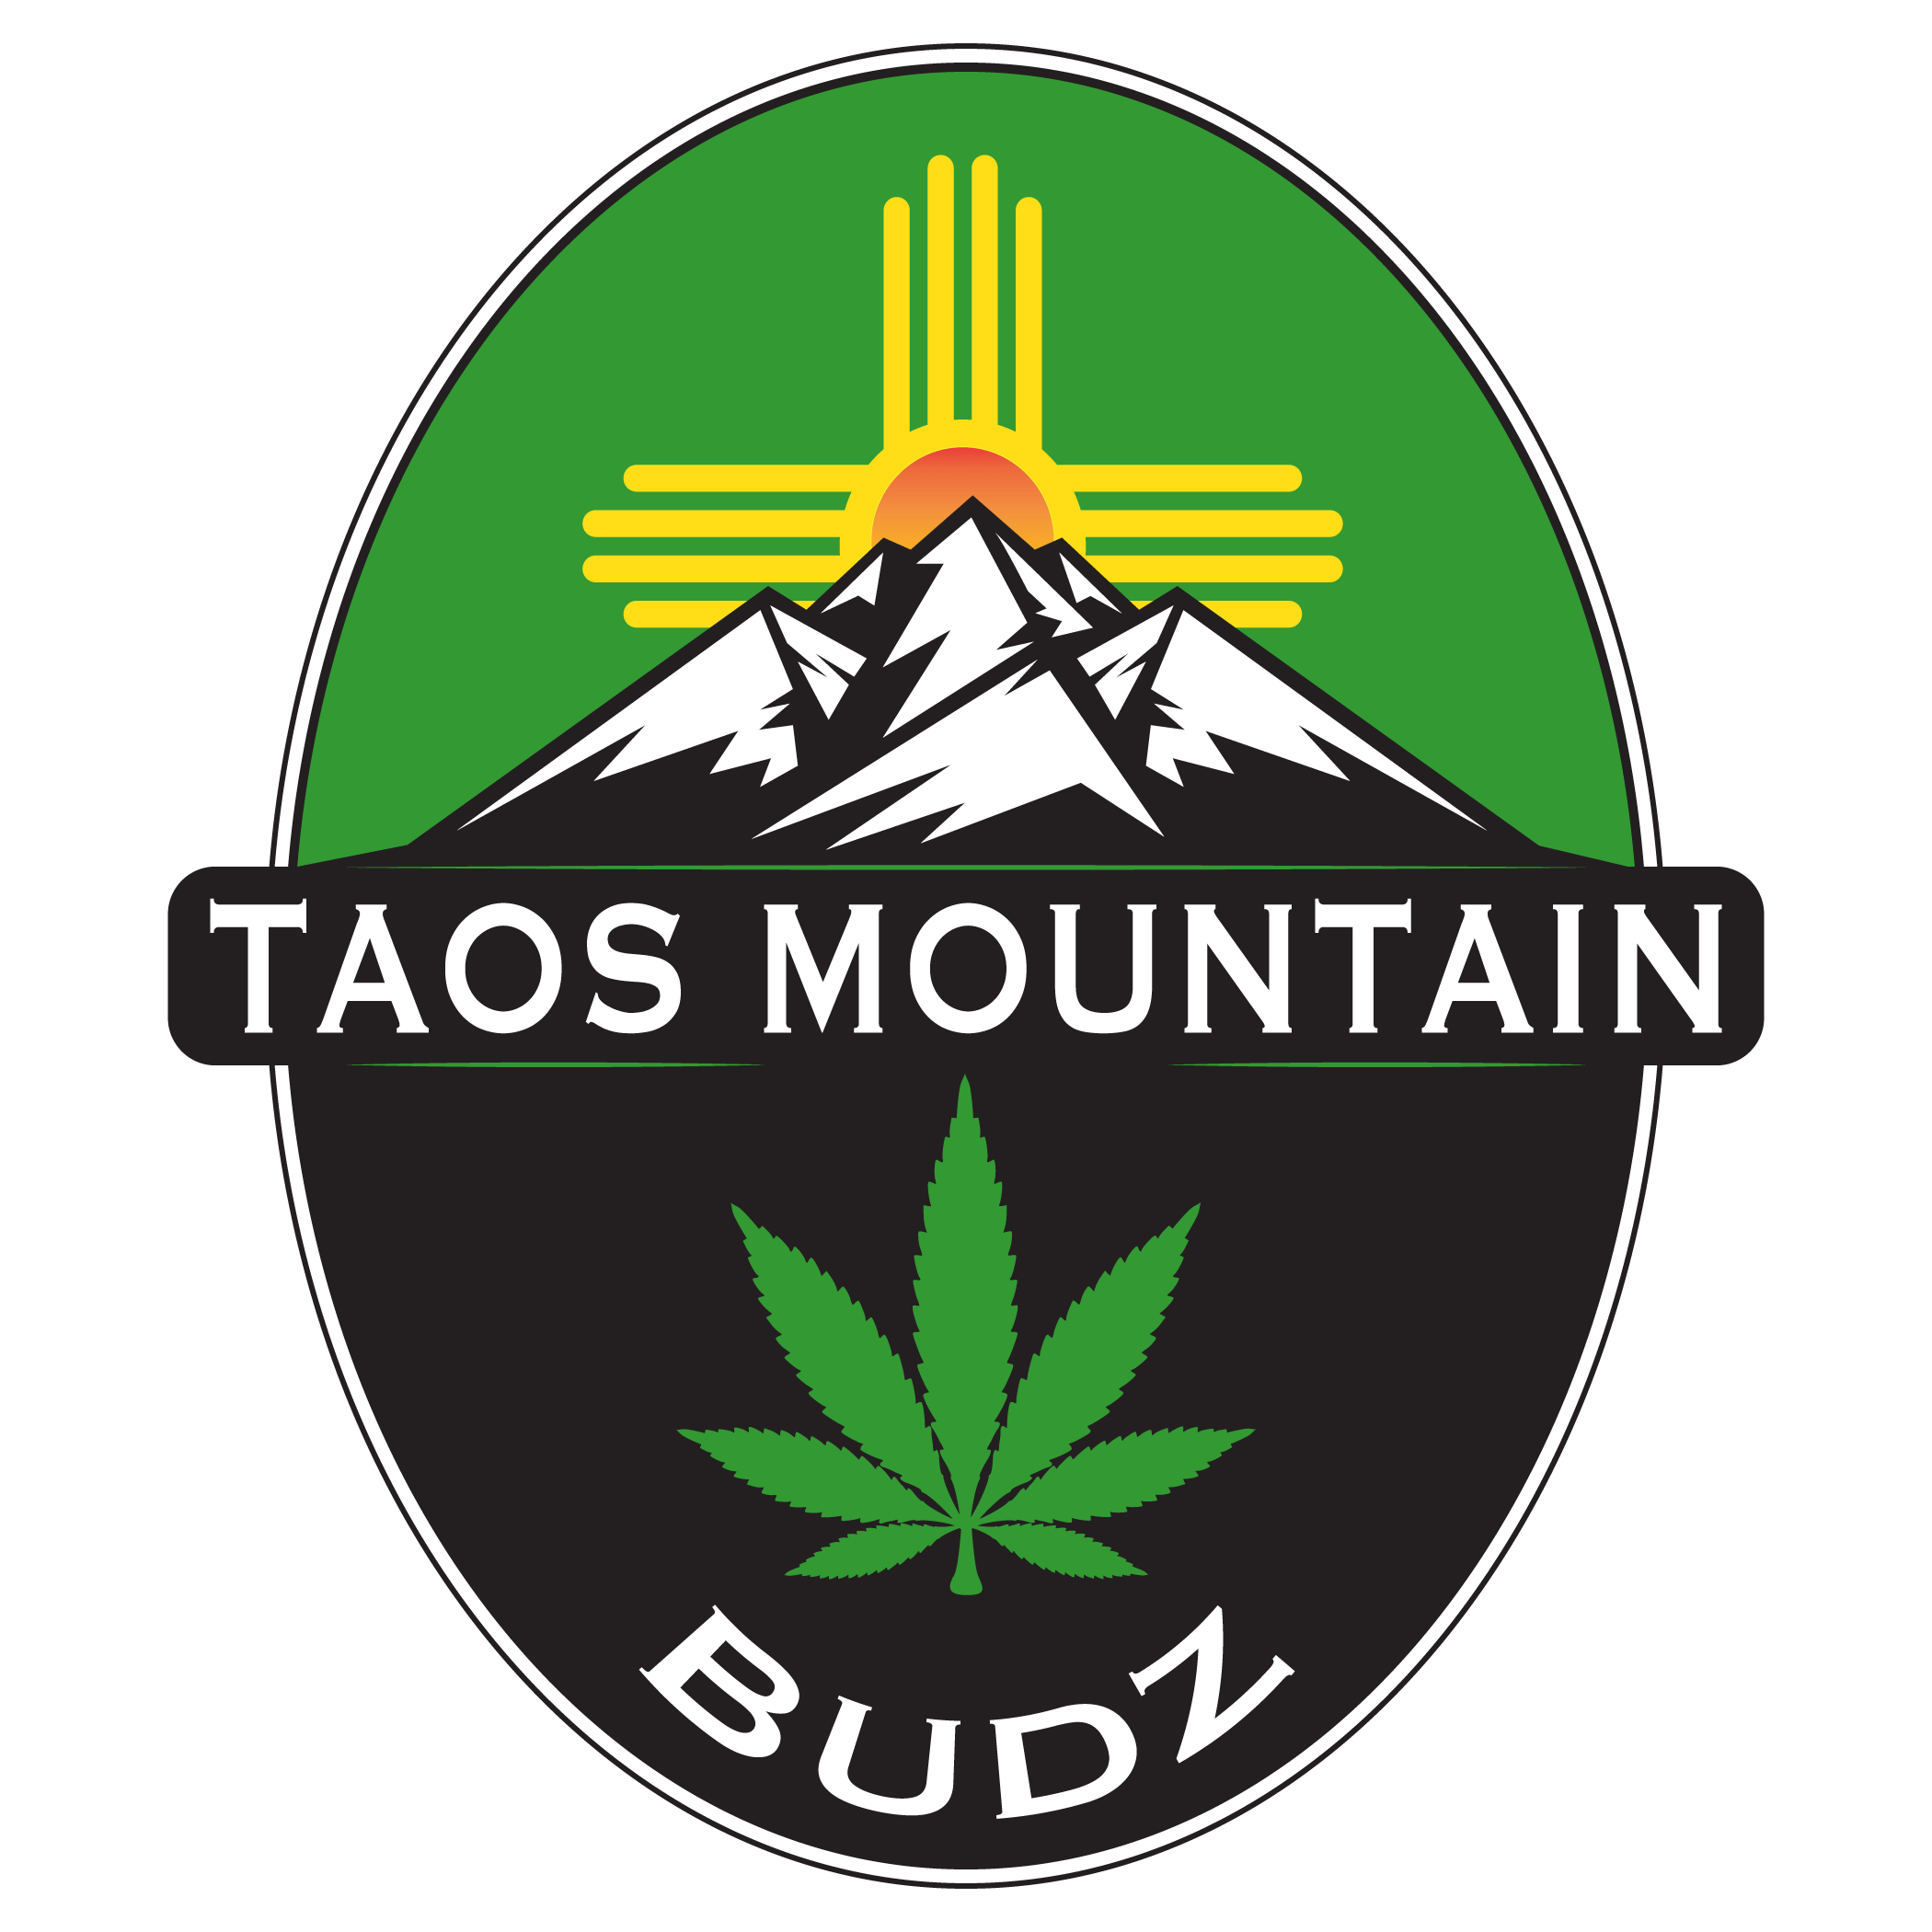 Taos Mountain Budz Logo ABQ Albuquerque New Mexico NM